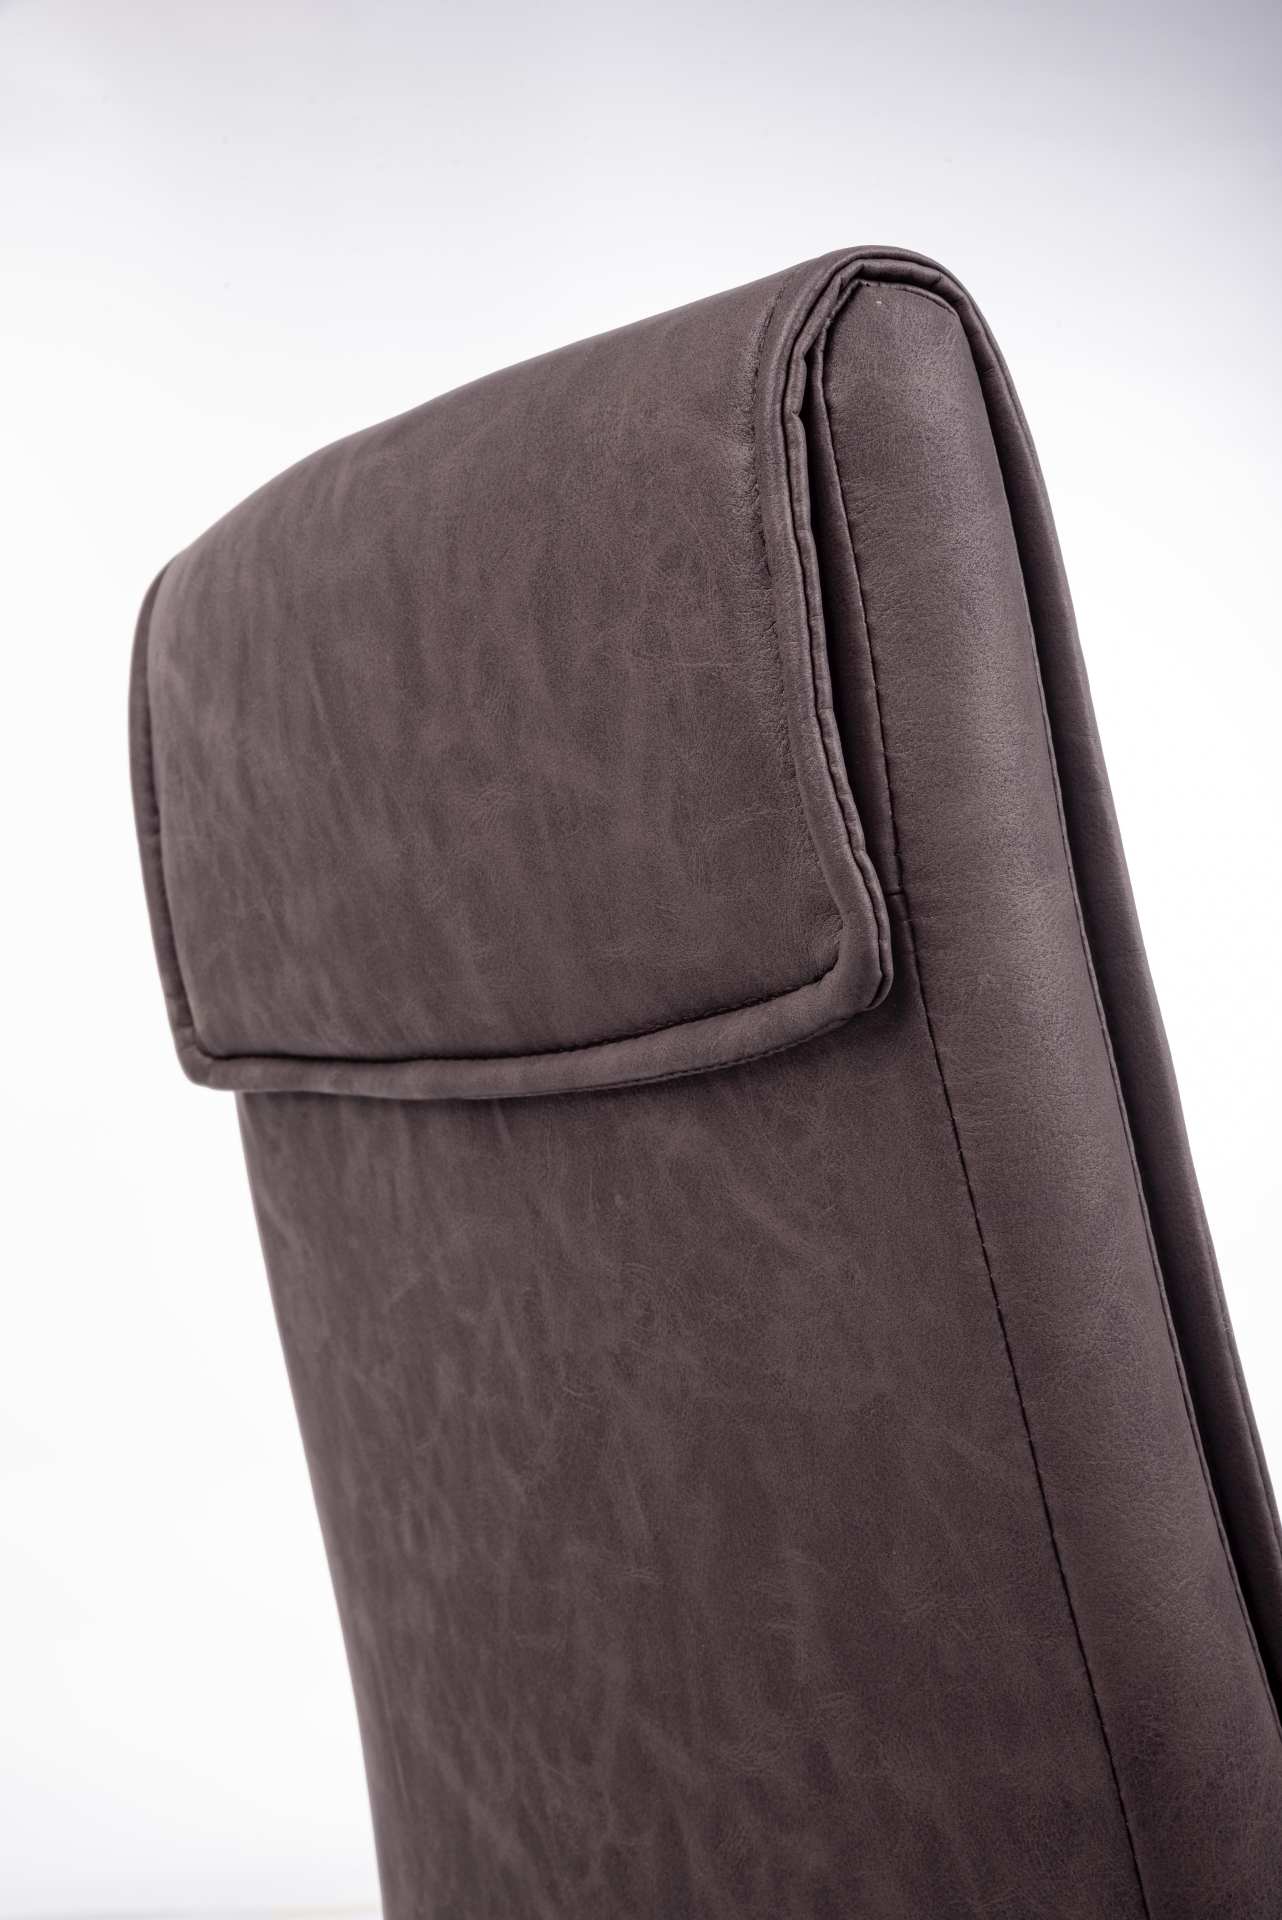 Der Esszimmerstuhl Sofie überzeugt mit seinem klassischen Design. Gefertigt wurde der Stuhl aus Kunstleder, welches einen braunen Farbton hat. Das Gestell ist aus Metall und ist Schwarz. Die Sitzhöhe beträgt 49 cm.